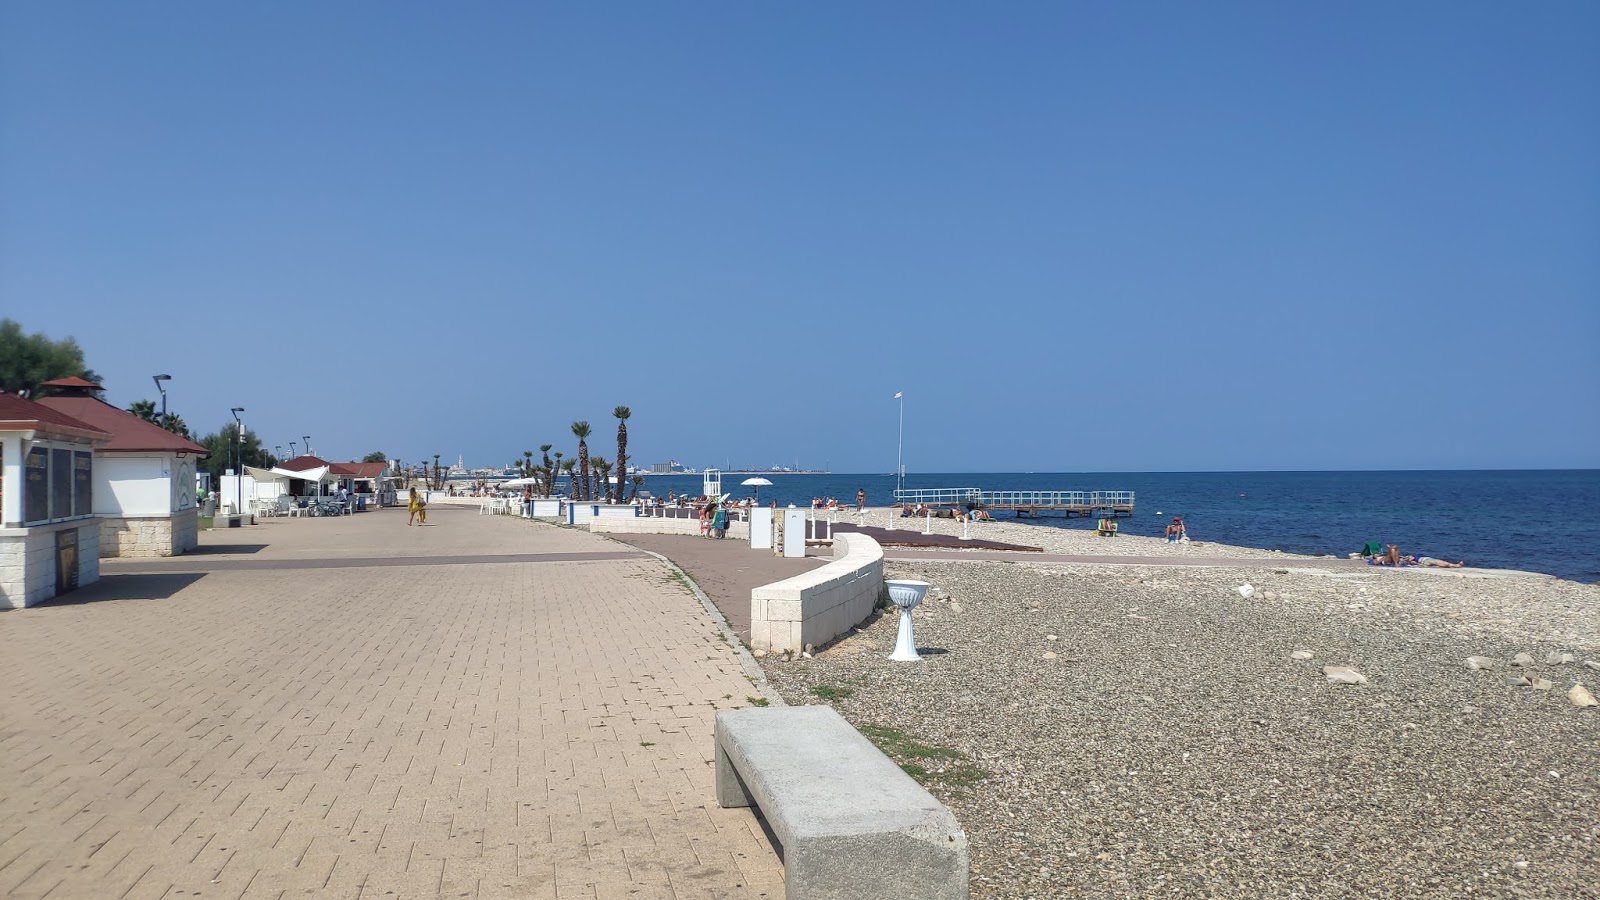 Torre Quetta beach'in fotoğrafı geniş plaj ile birlikte